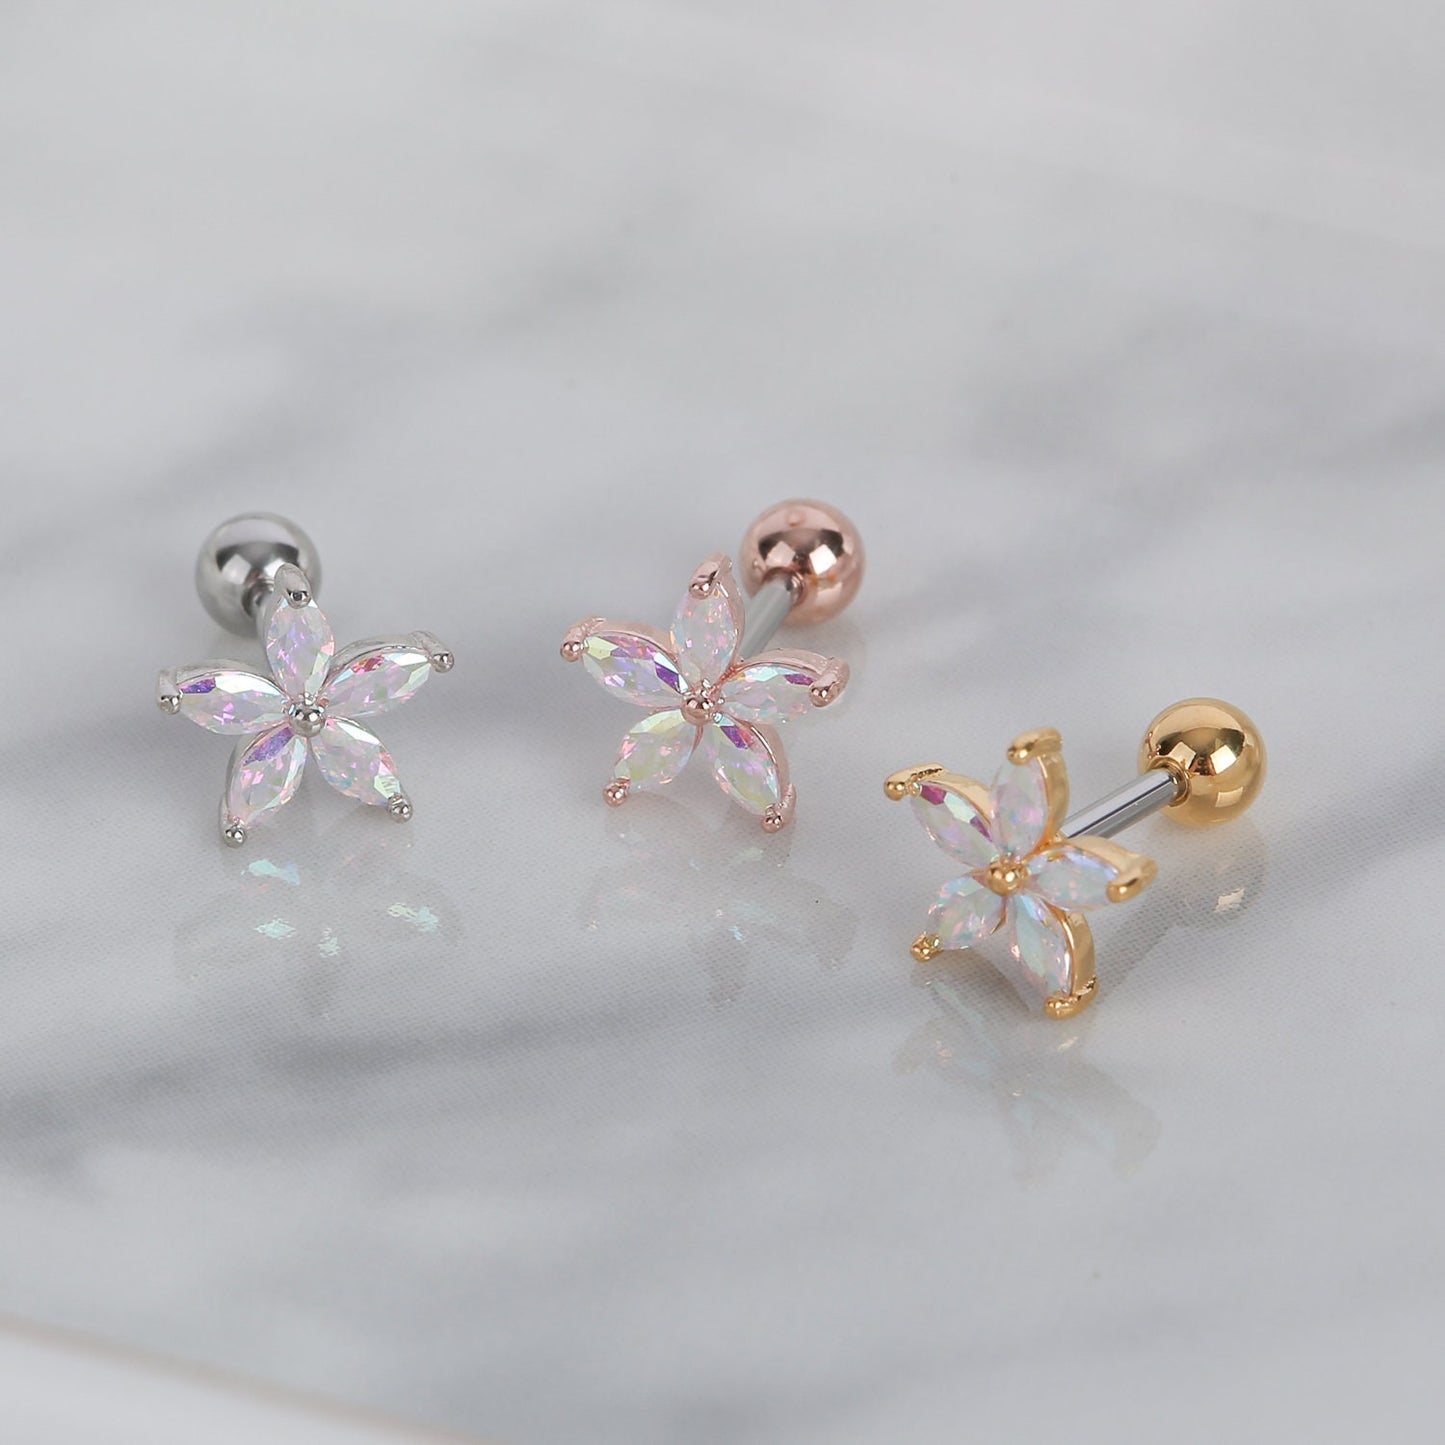 KURA Piercing Type Earrings | Surgical Steel Piercing | Helix Barbell Stud | Flower Cartilage Earrings | Elegant Lobe Pair Earring